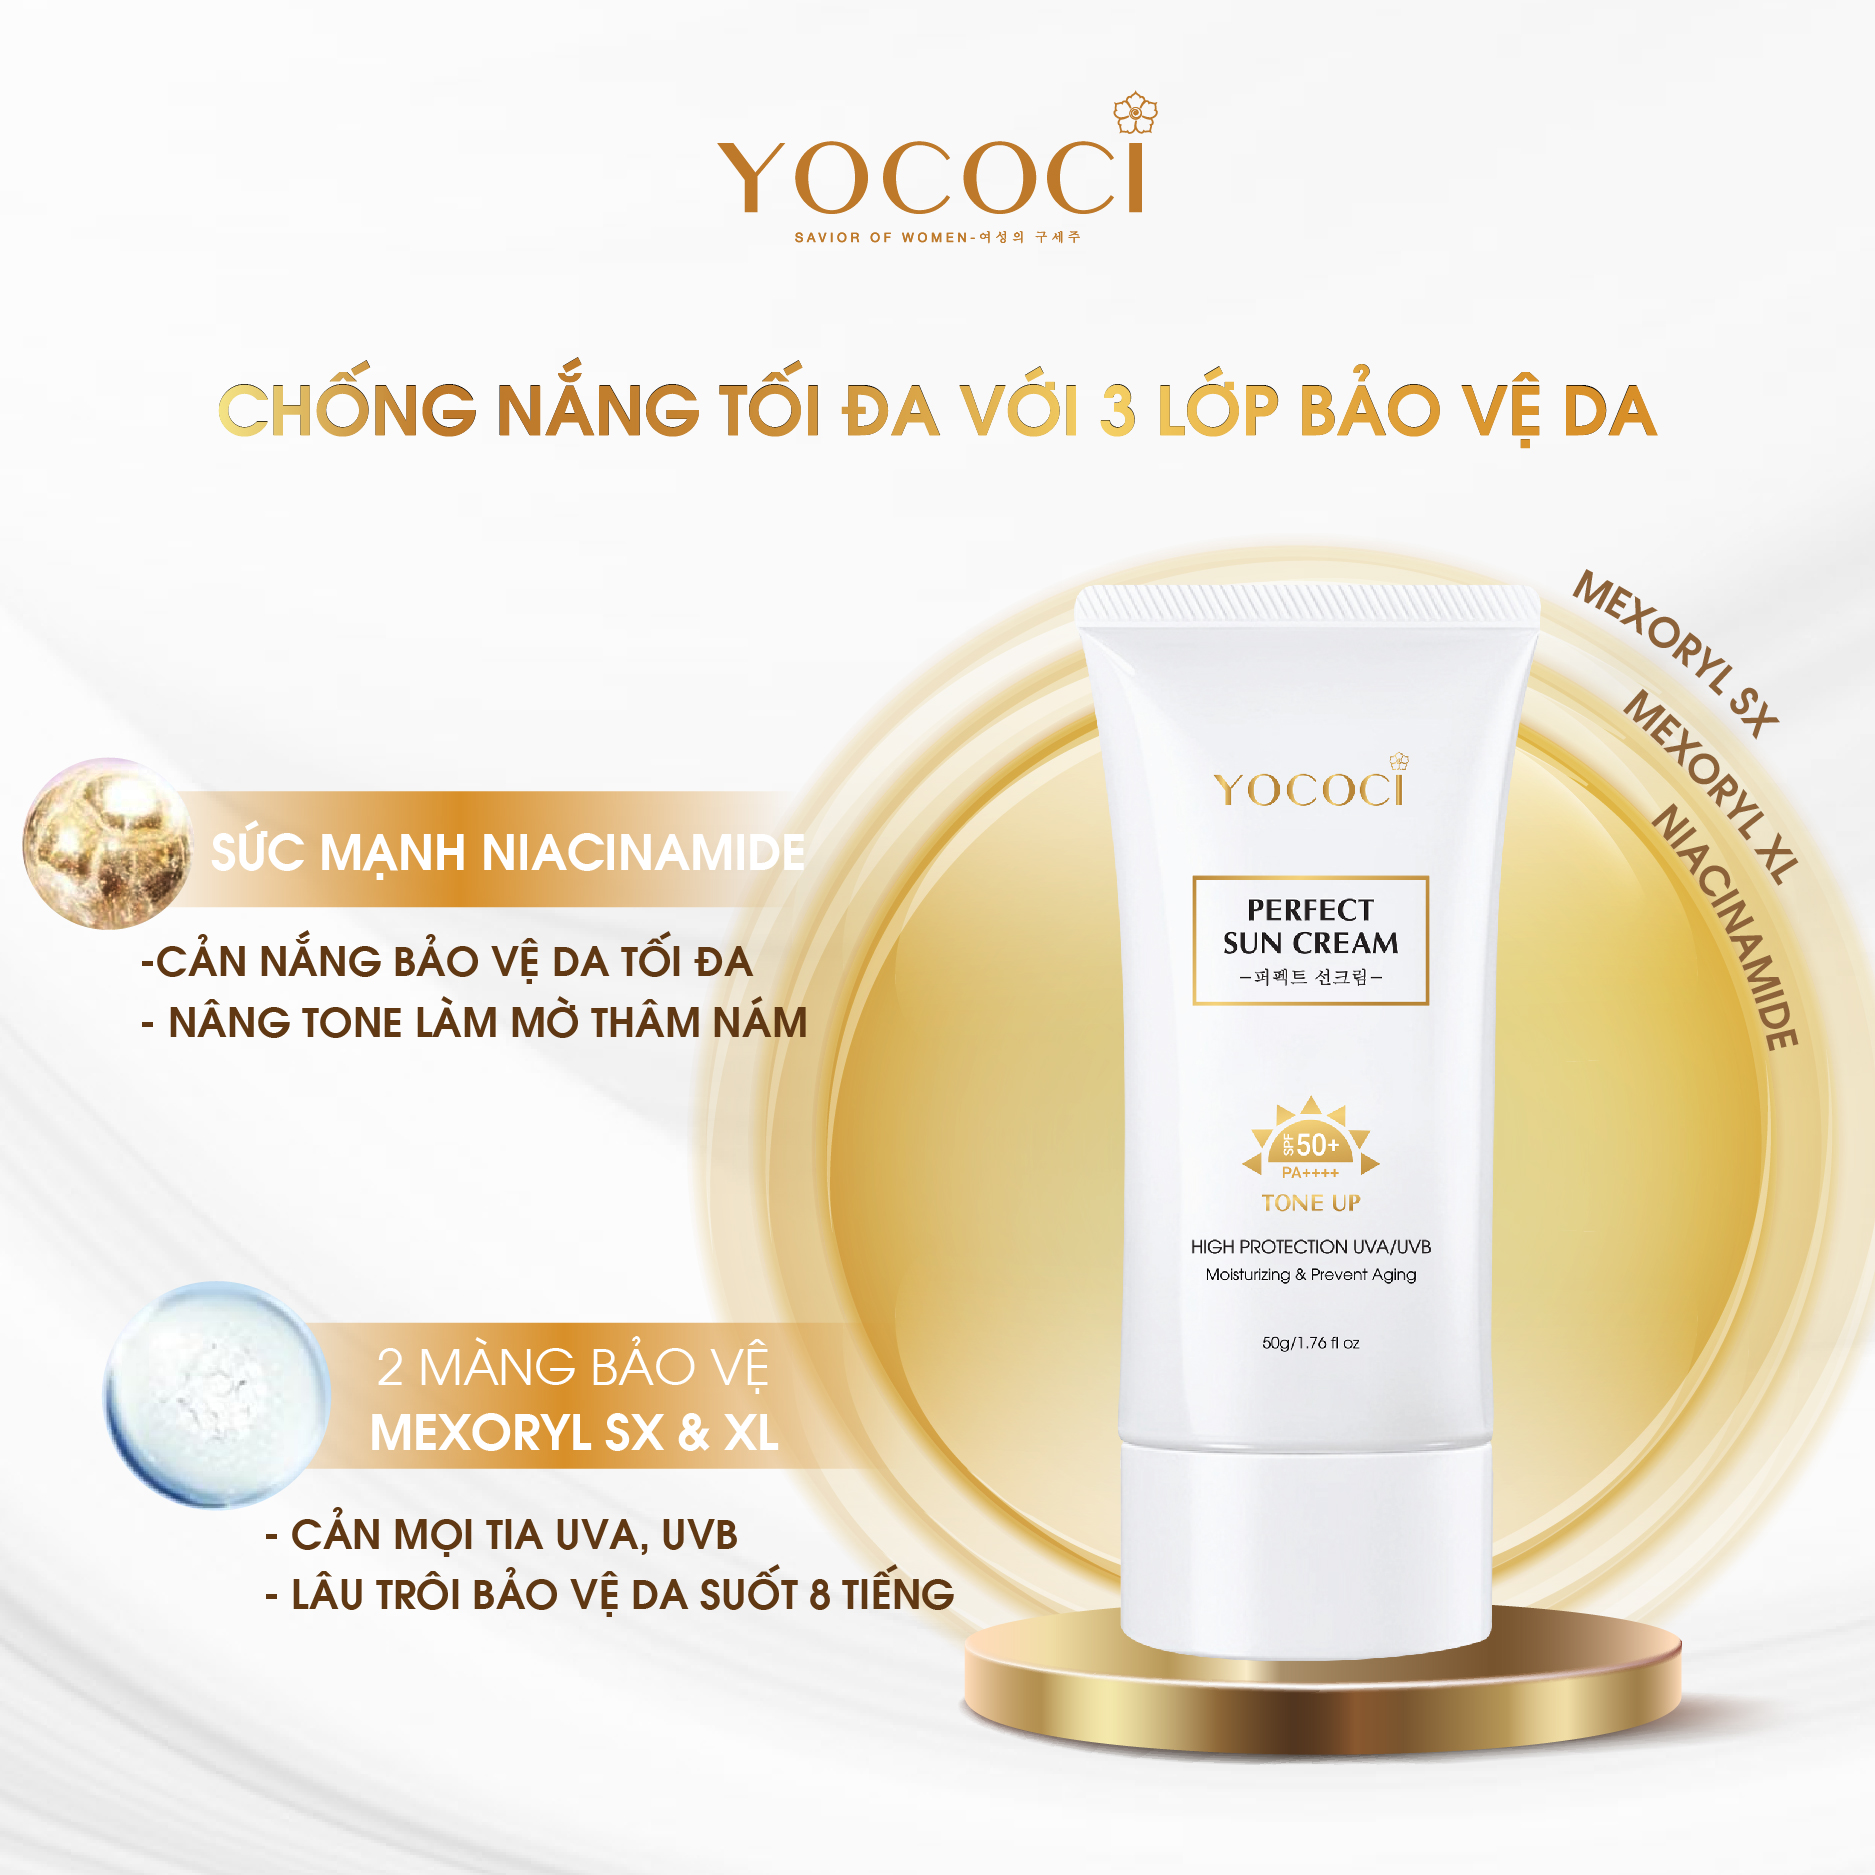 Bộ 4 sản phẩm Yococi (Kem Chống Nắng 50g + Kem Face 20g + Serum 20ml + Gel Chấm Mụn 15g )